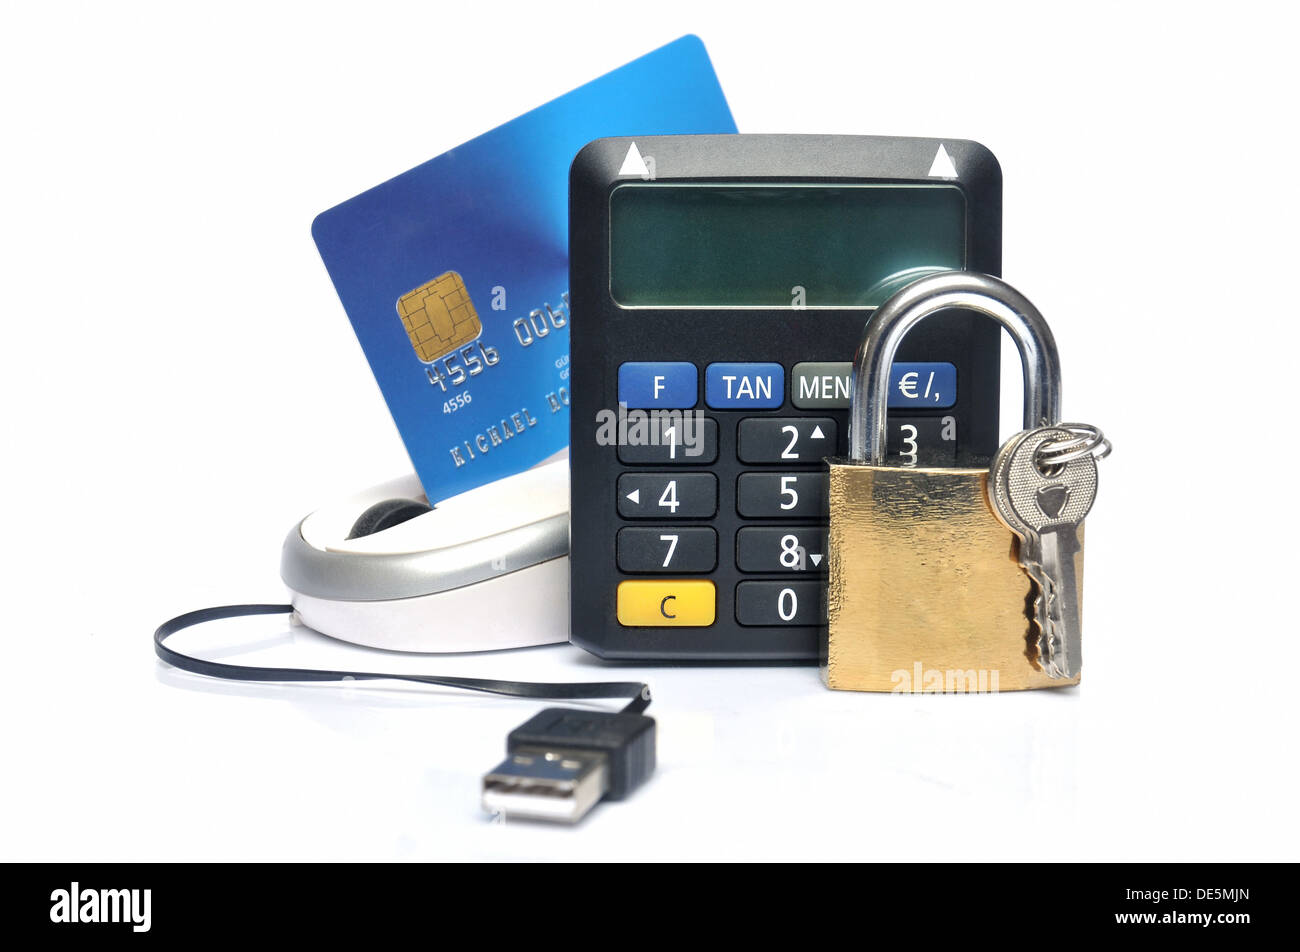 Kreditkarte-sichere Code-Generator, Computer-Maus und Vorhängeschloss auf weißem Hintergrund Stockfoto